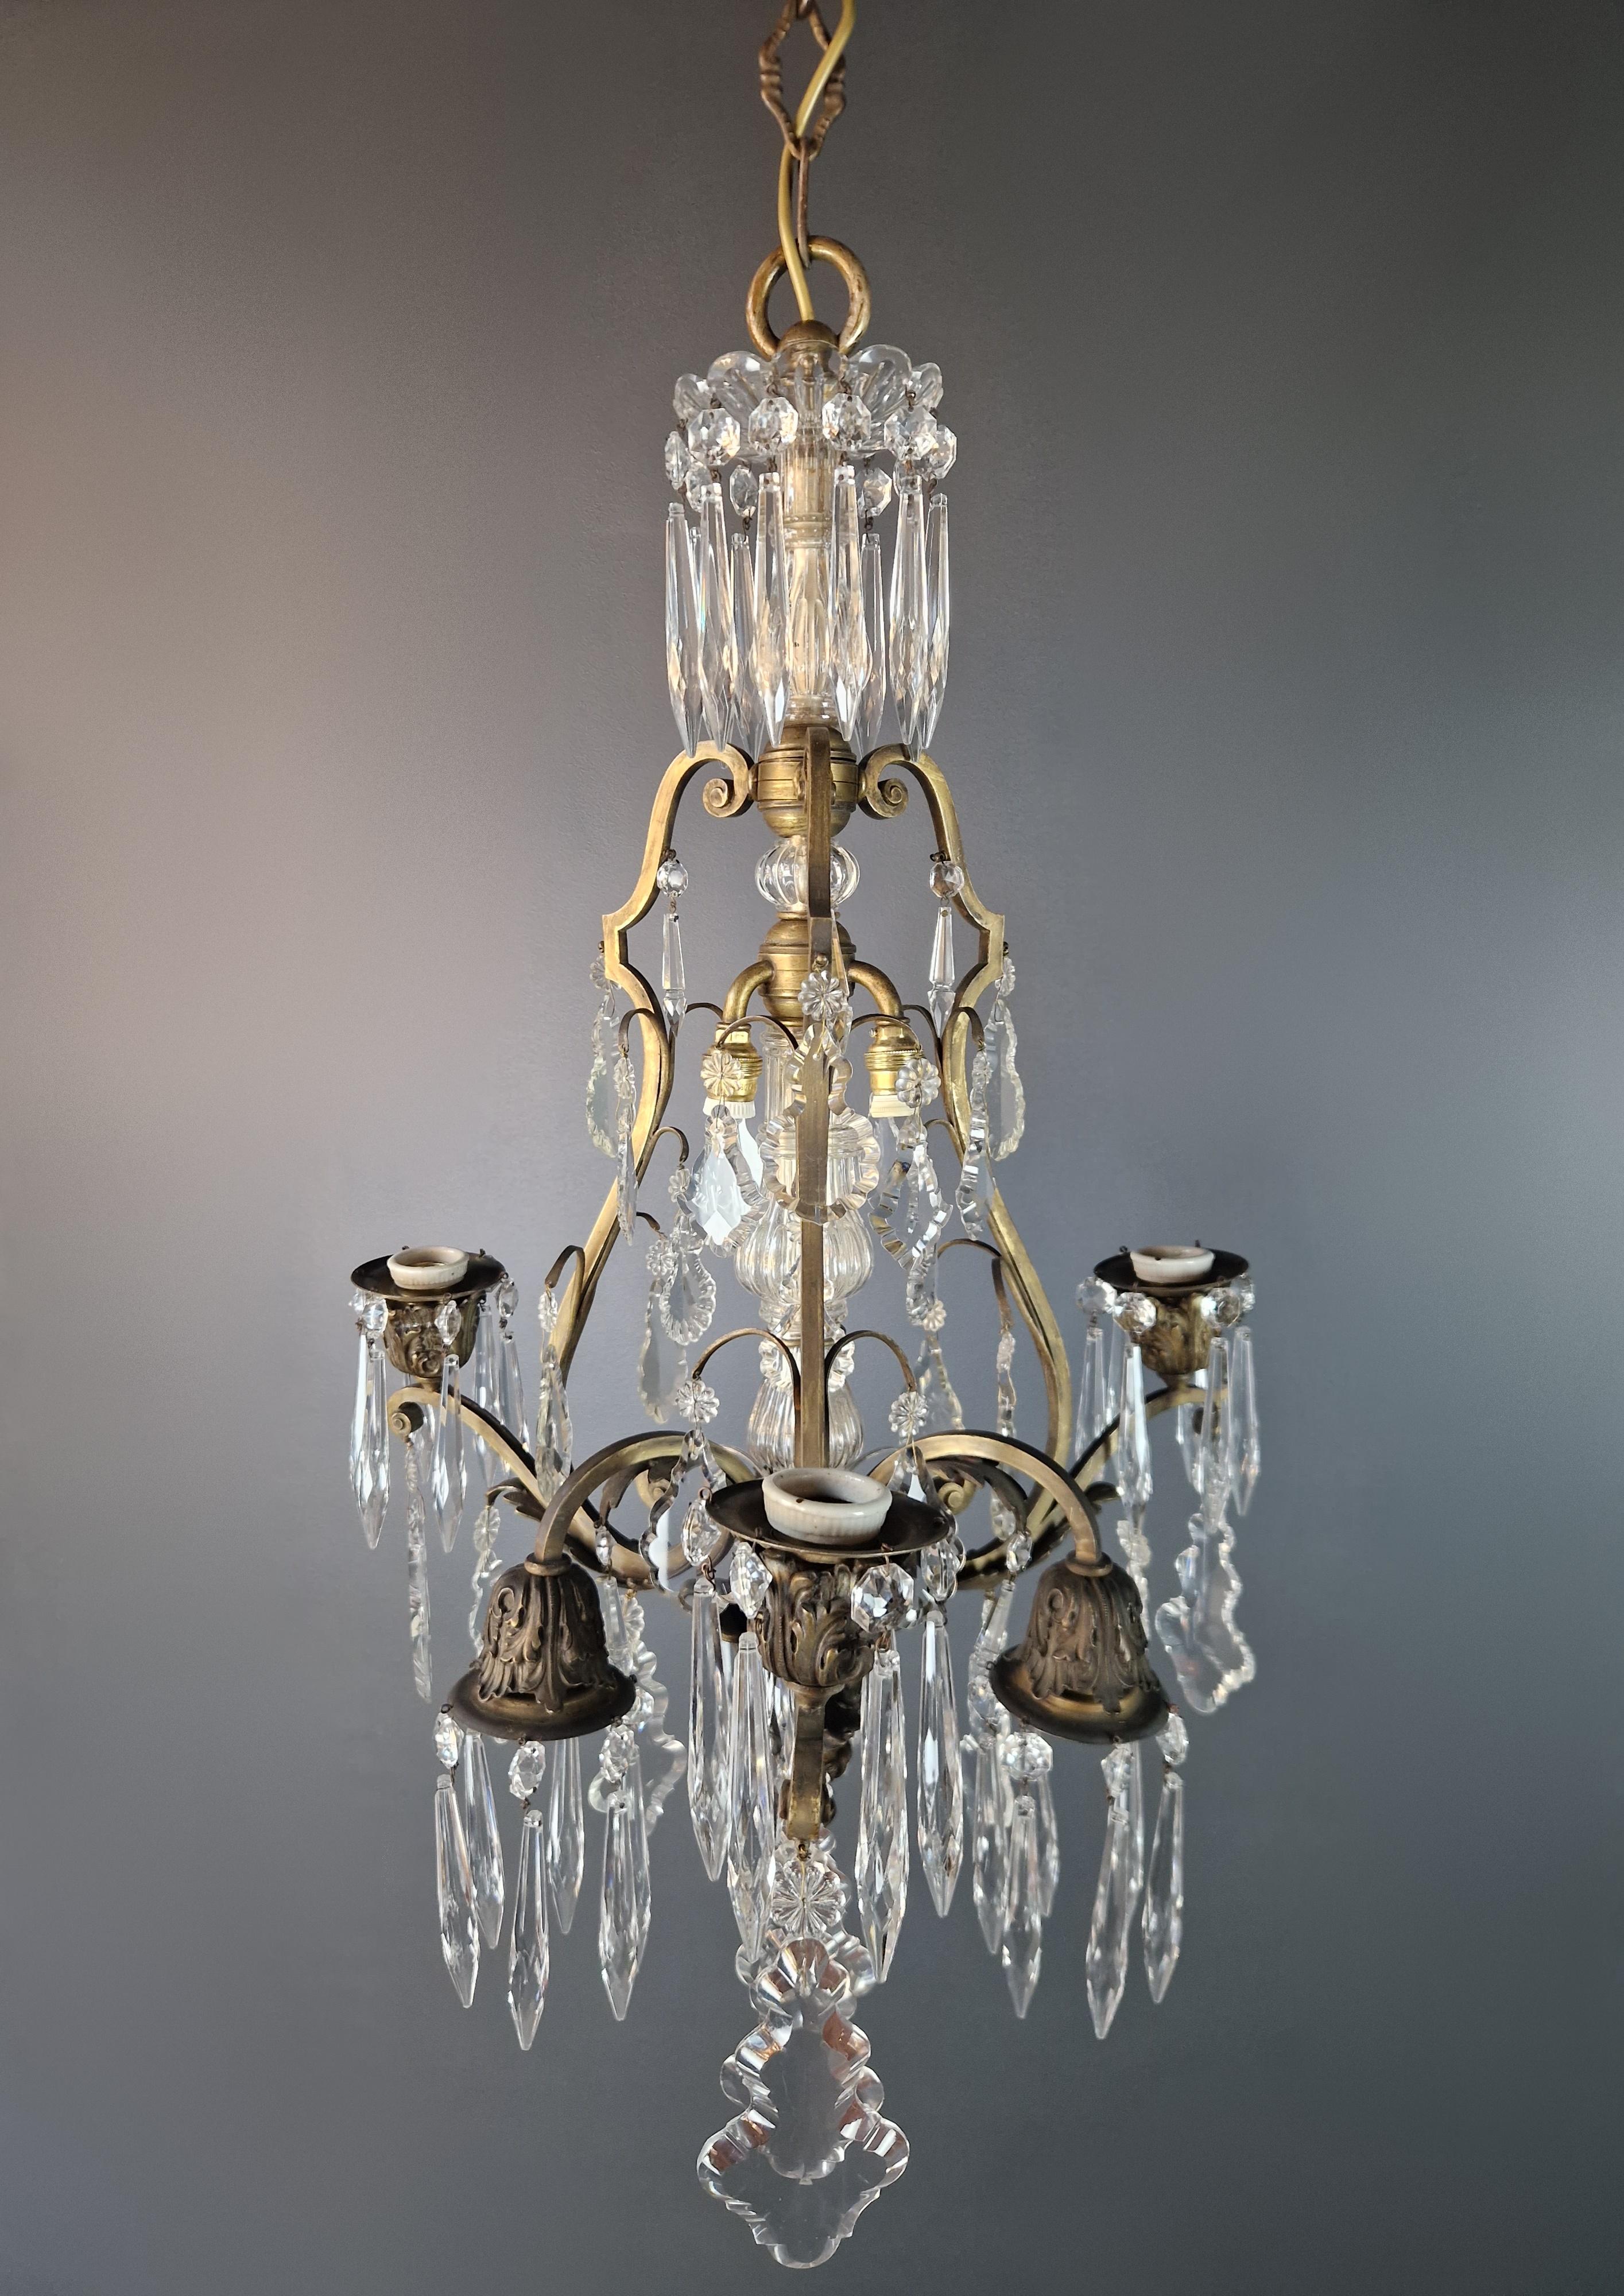 Brass Crystal Chandelier Antique Ceiling Lamp Lustre Art Nouveau and Art Deco For Sale 2